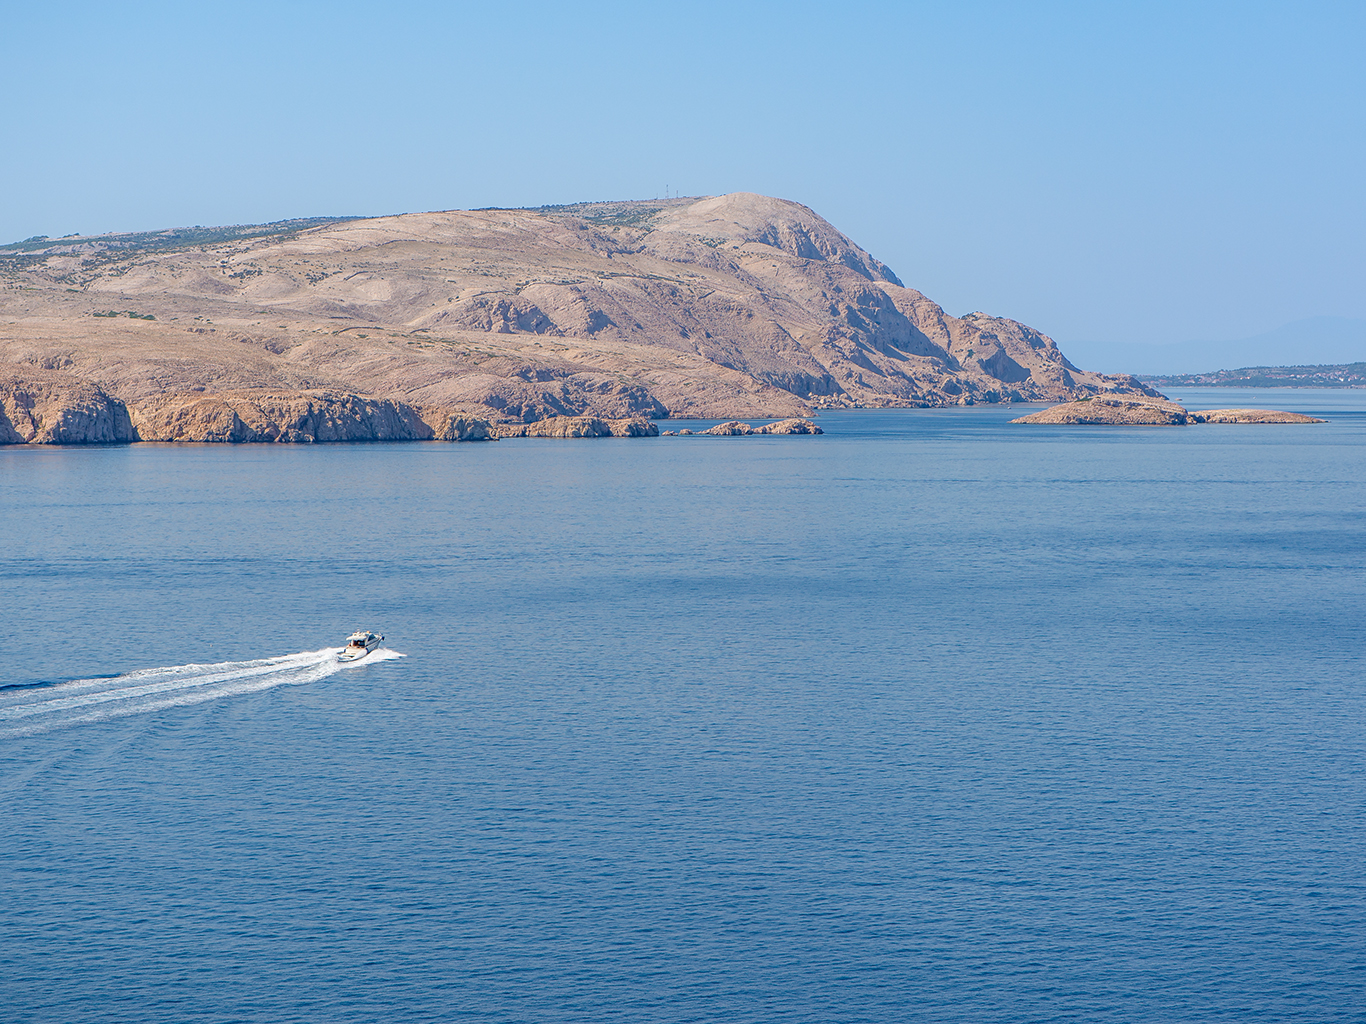 Během lodního výletu uvidíte skalnaté pobřeží ostrůvků v NP Kornati